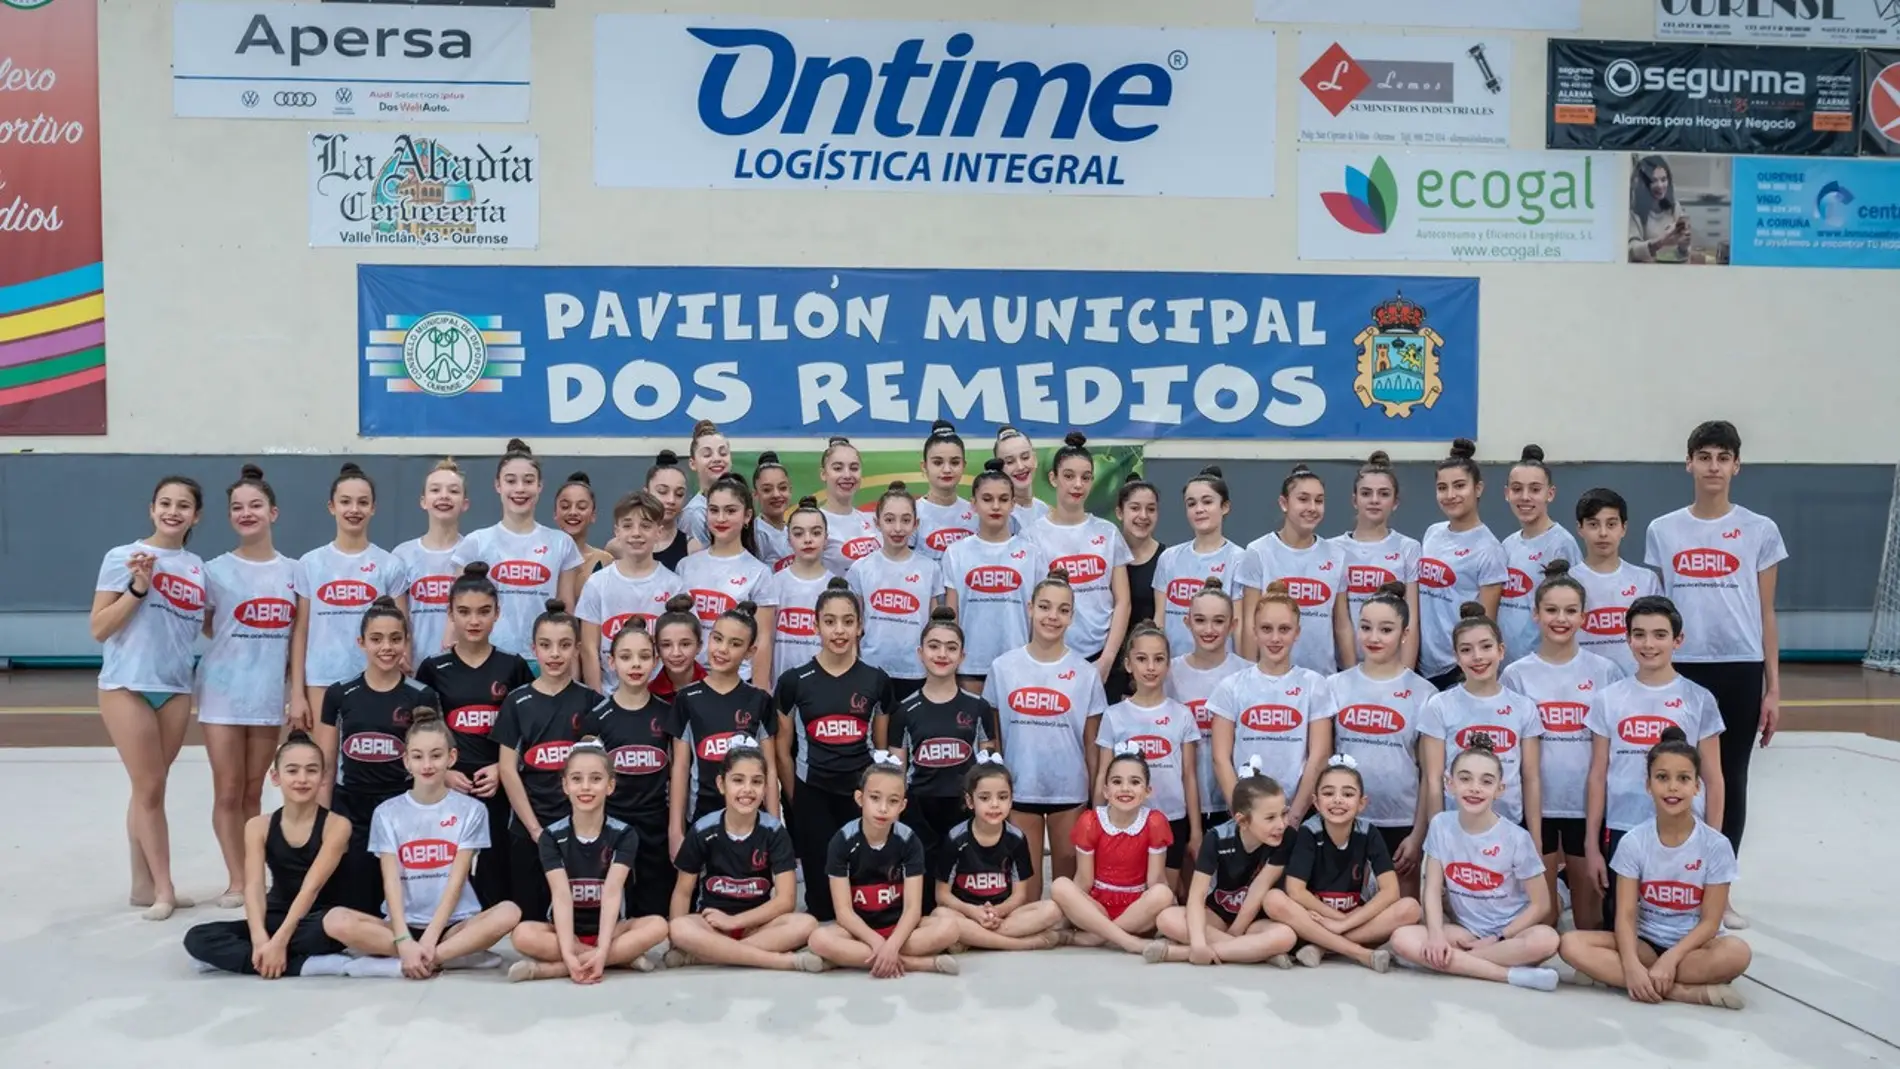 Os clubs XImnasia Pavillón Ourense e escola Pavillón fixeron a súa presentación